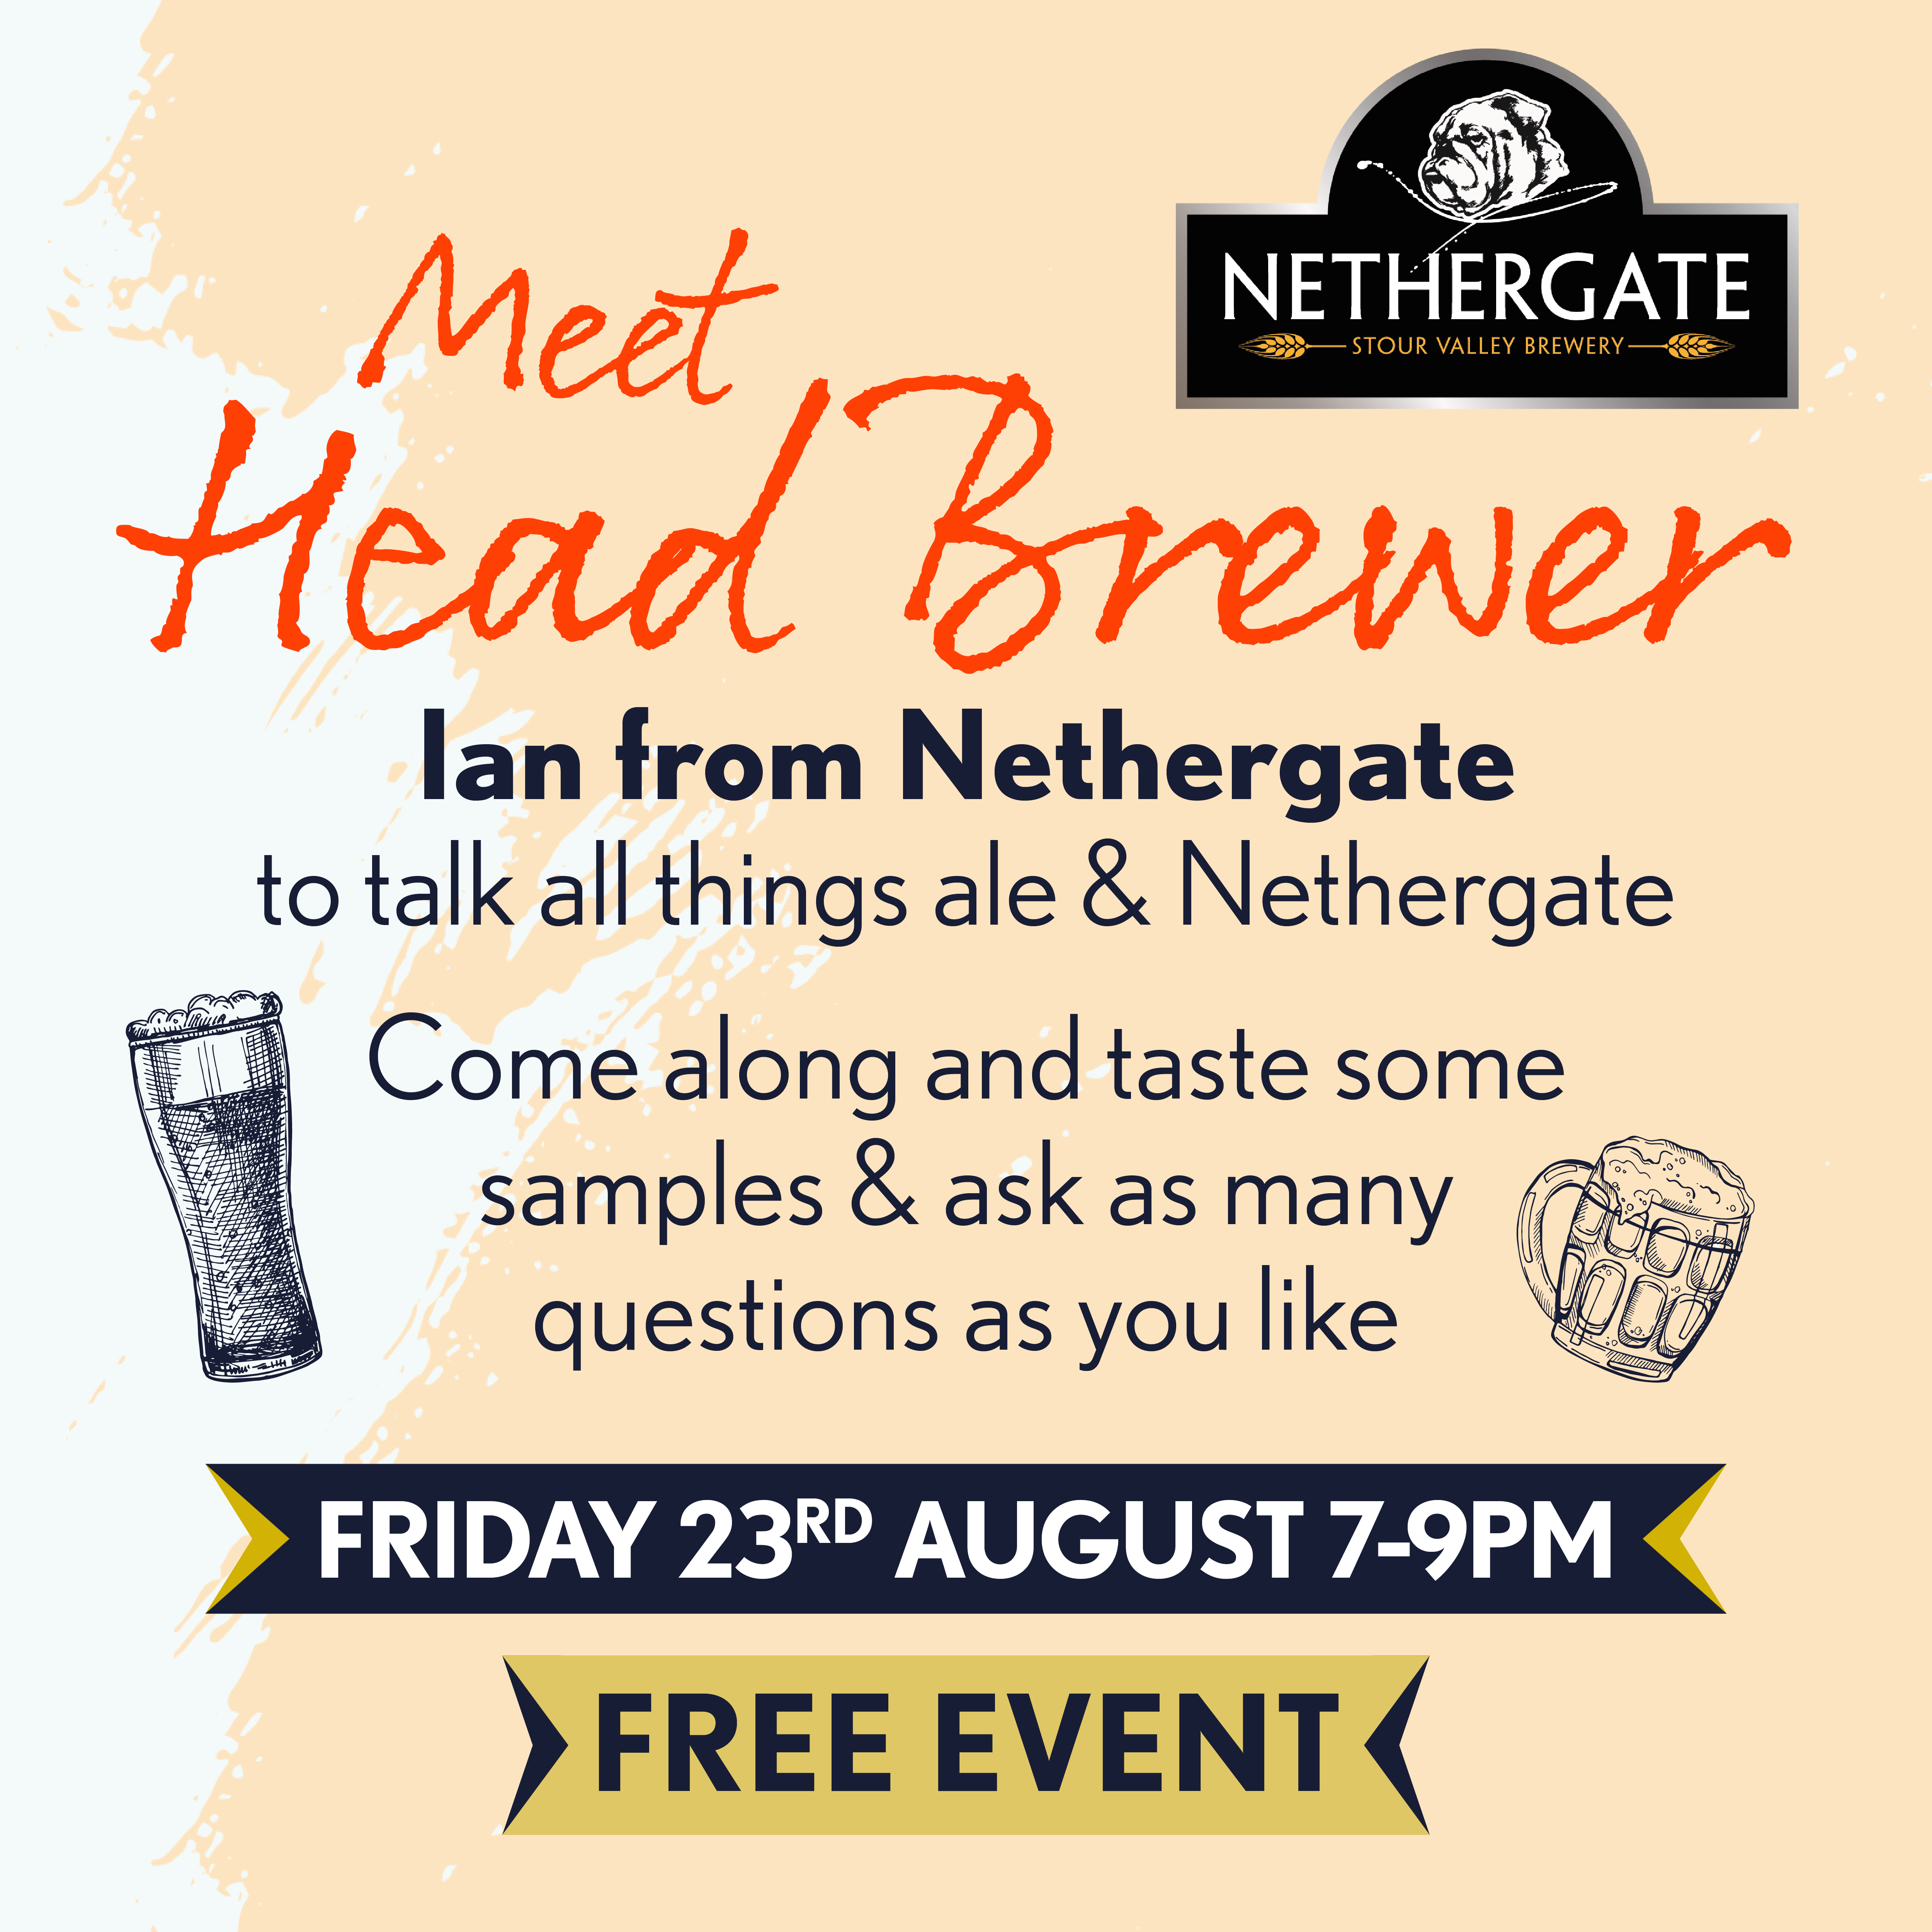 Meet Head Brewer Ian from Nethergates